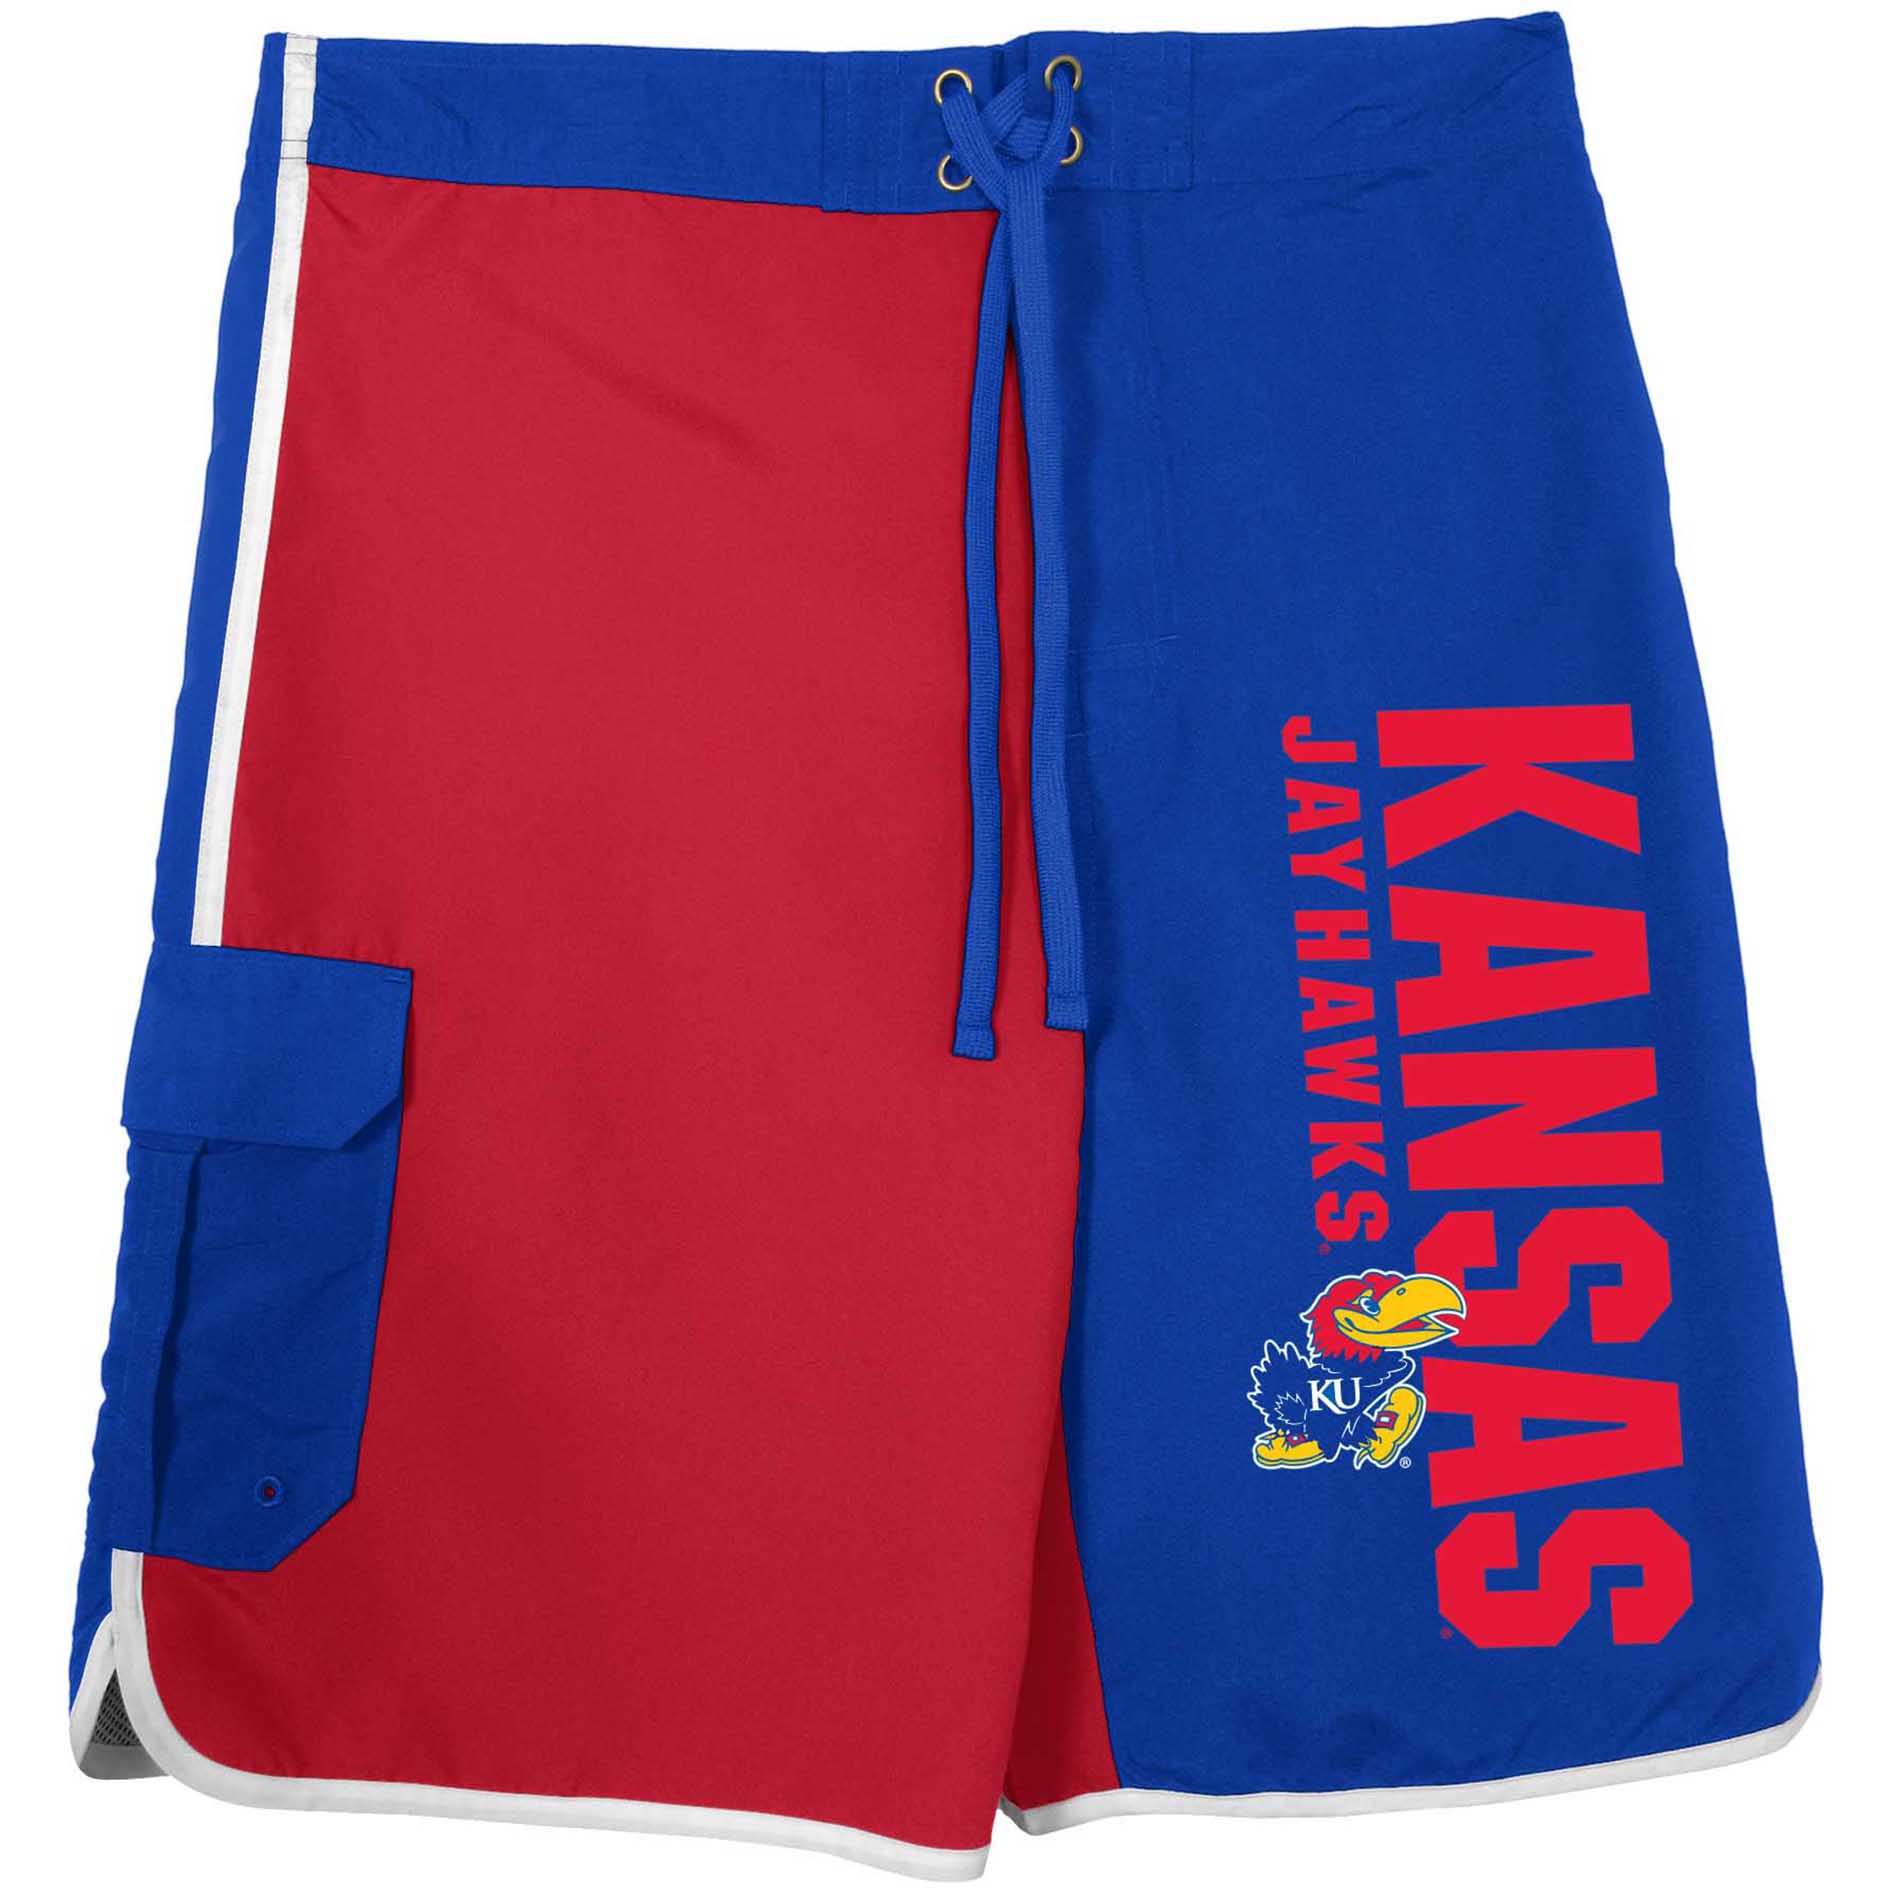 NCAA Men's University of Kansas Jayhawks Board Shorts